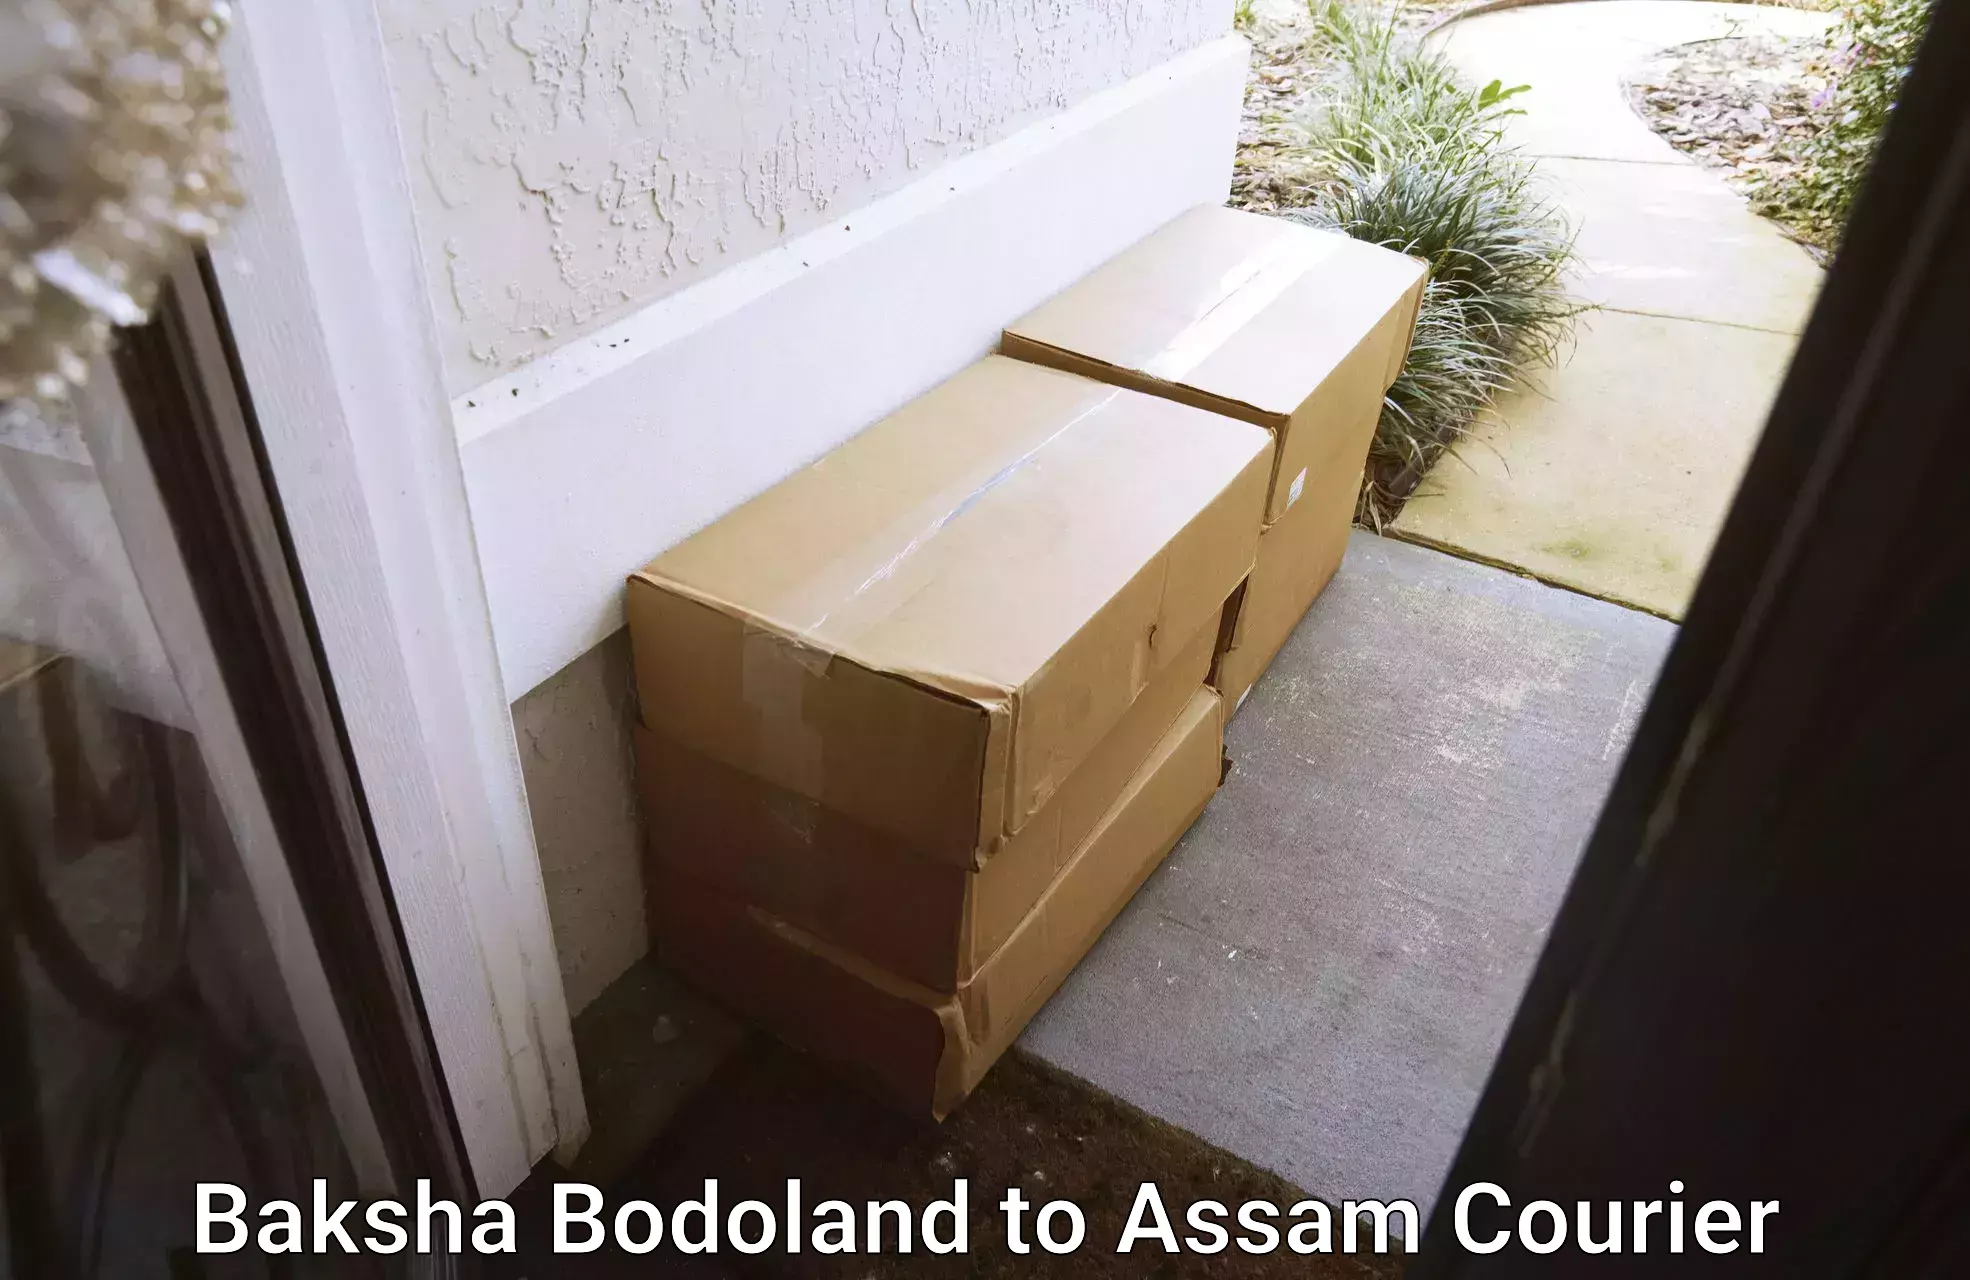 Nationwide parcel services Baksha Bodoland to Assam